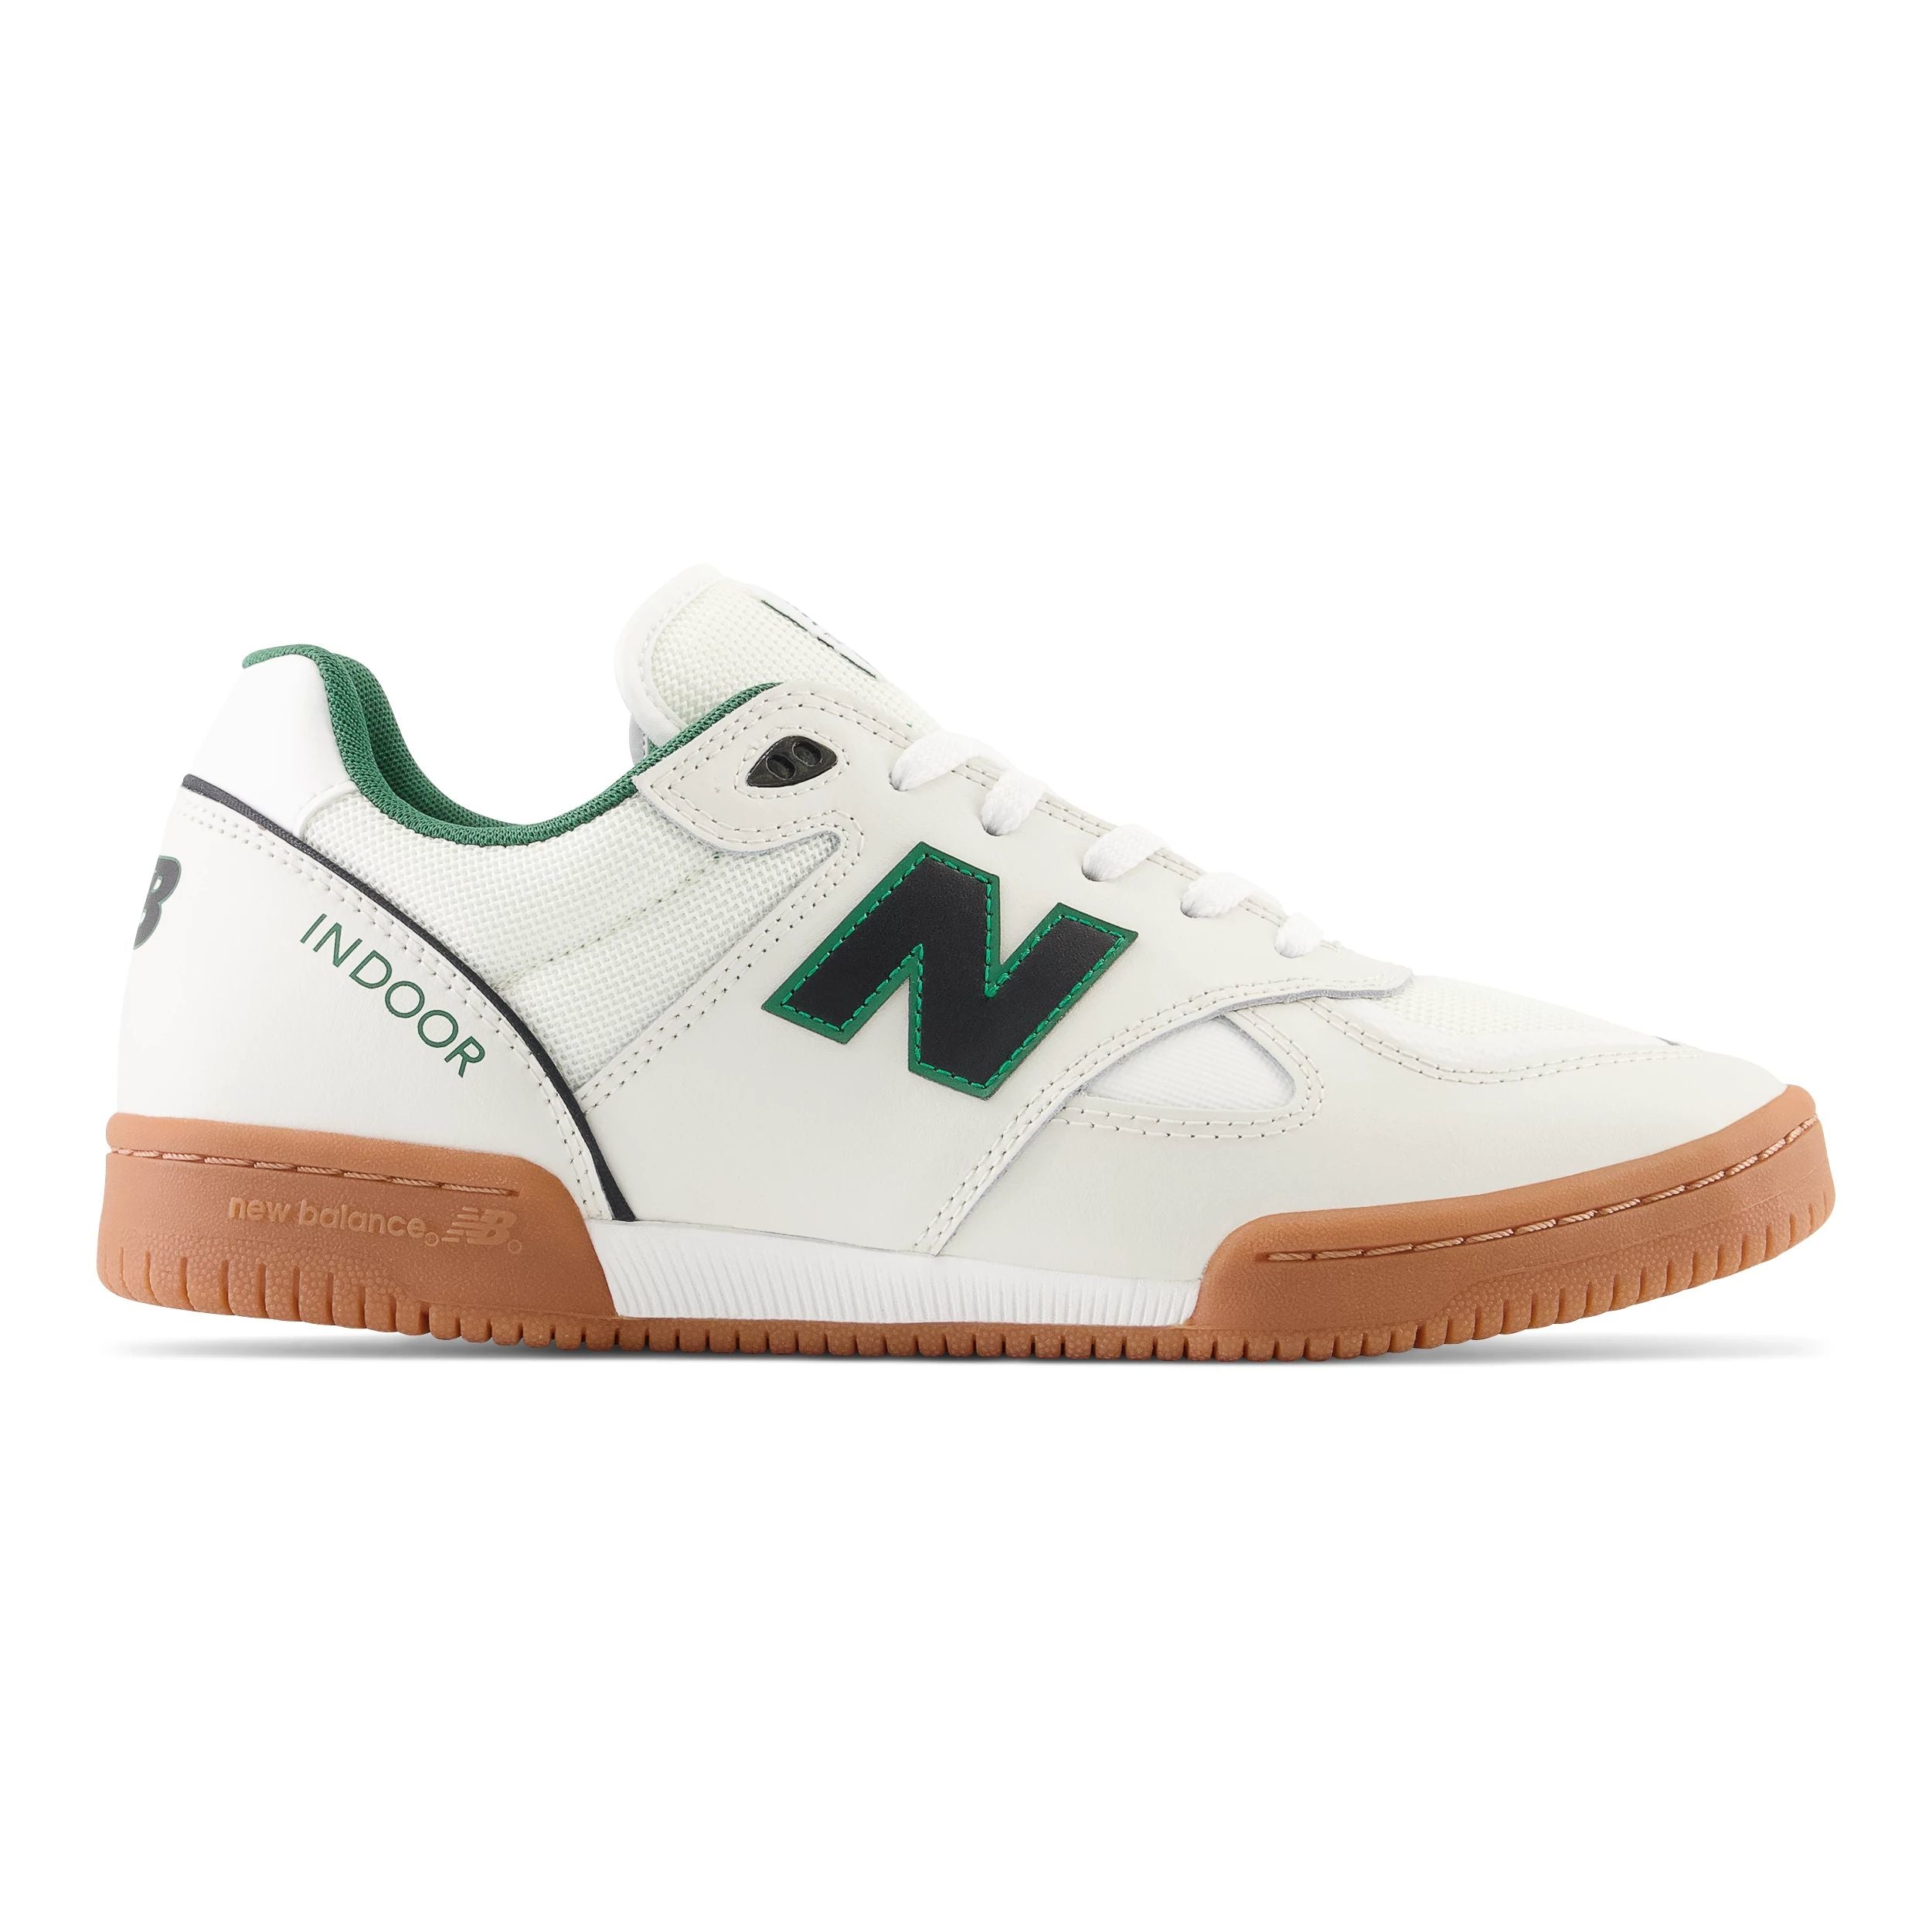 White/Gum Tom Knox NM600 NB Numeric Skate Shoe